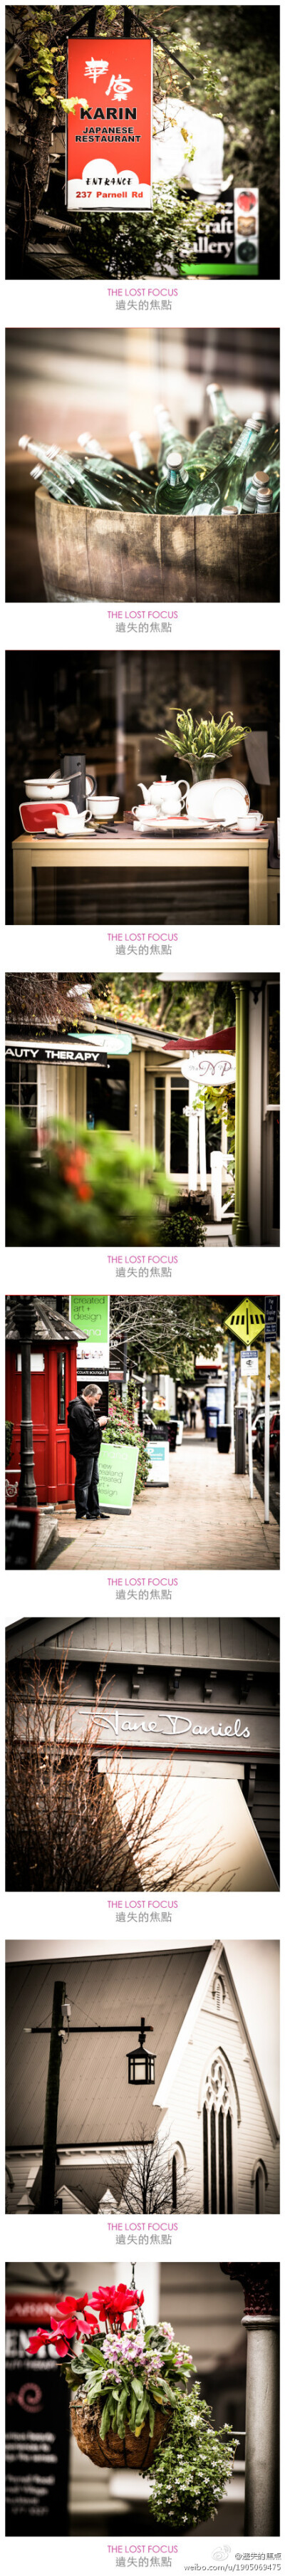 拍的不错 继续用新镜头得瑟 得瑟吧 。。。 上海拍的那些照片呢？？